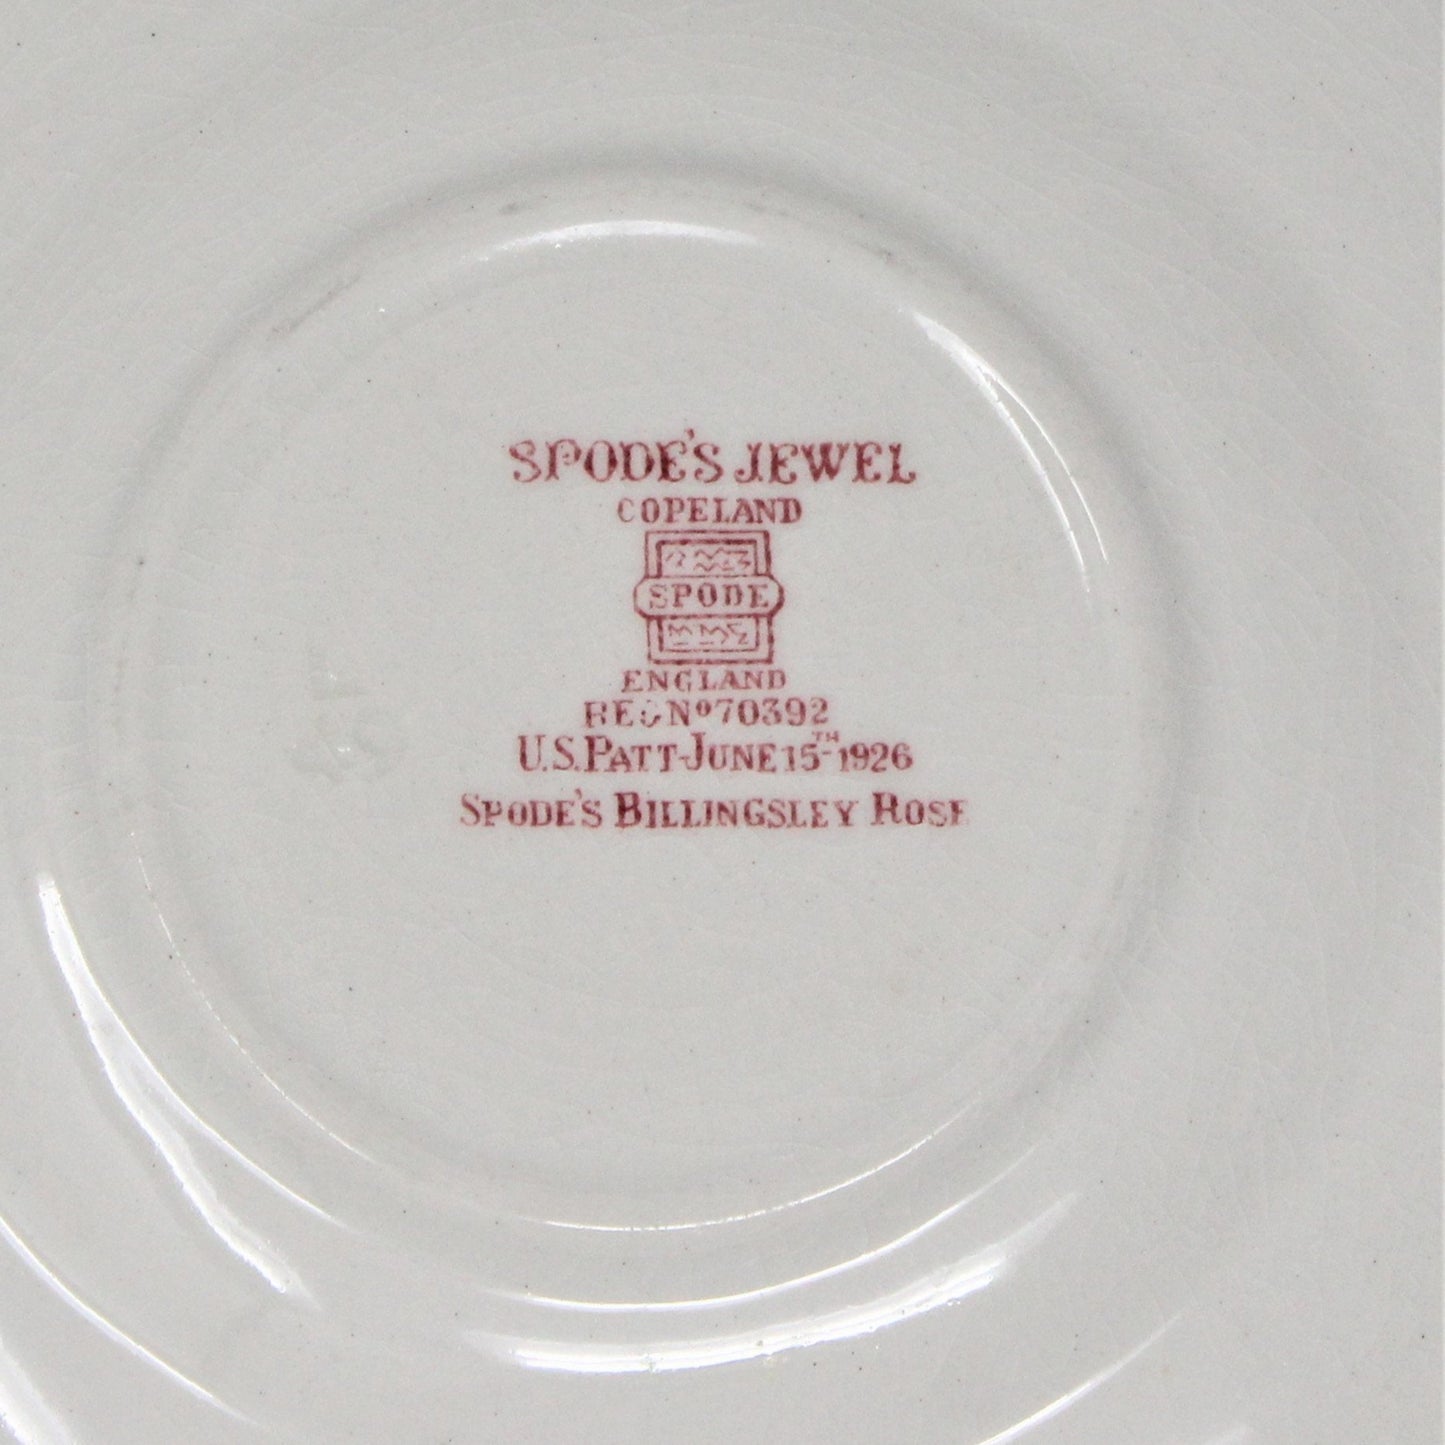 Saucers, Spode Copeland, Billingsley Rose, English Earthenware, Vintage